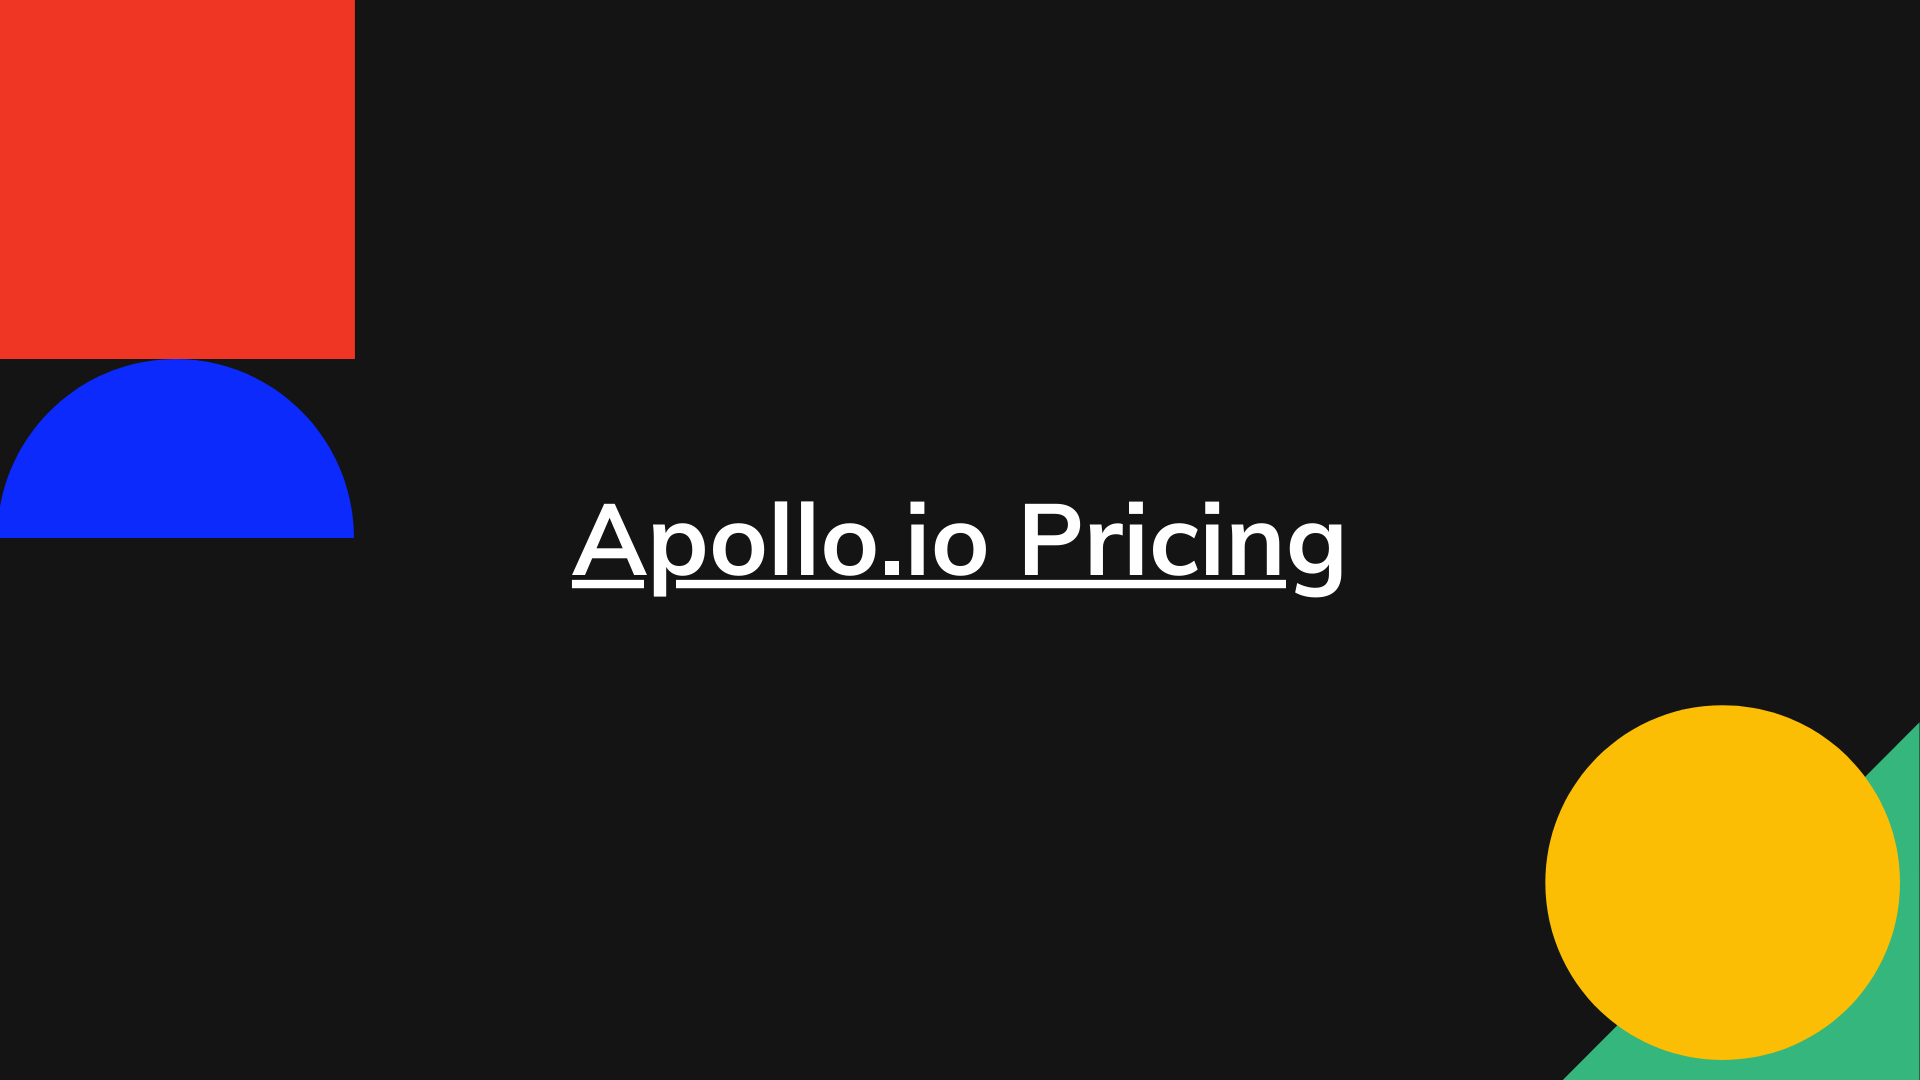 Apollo.io Pricing